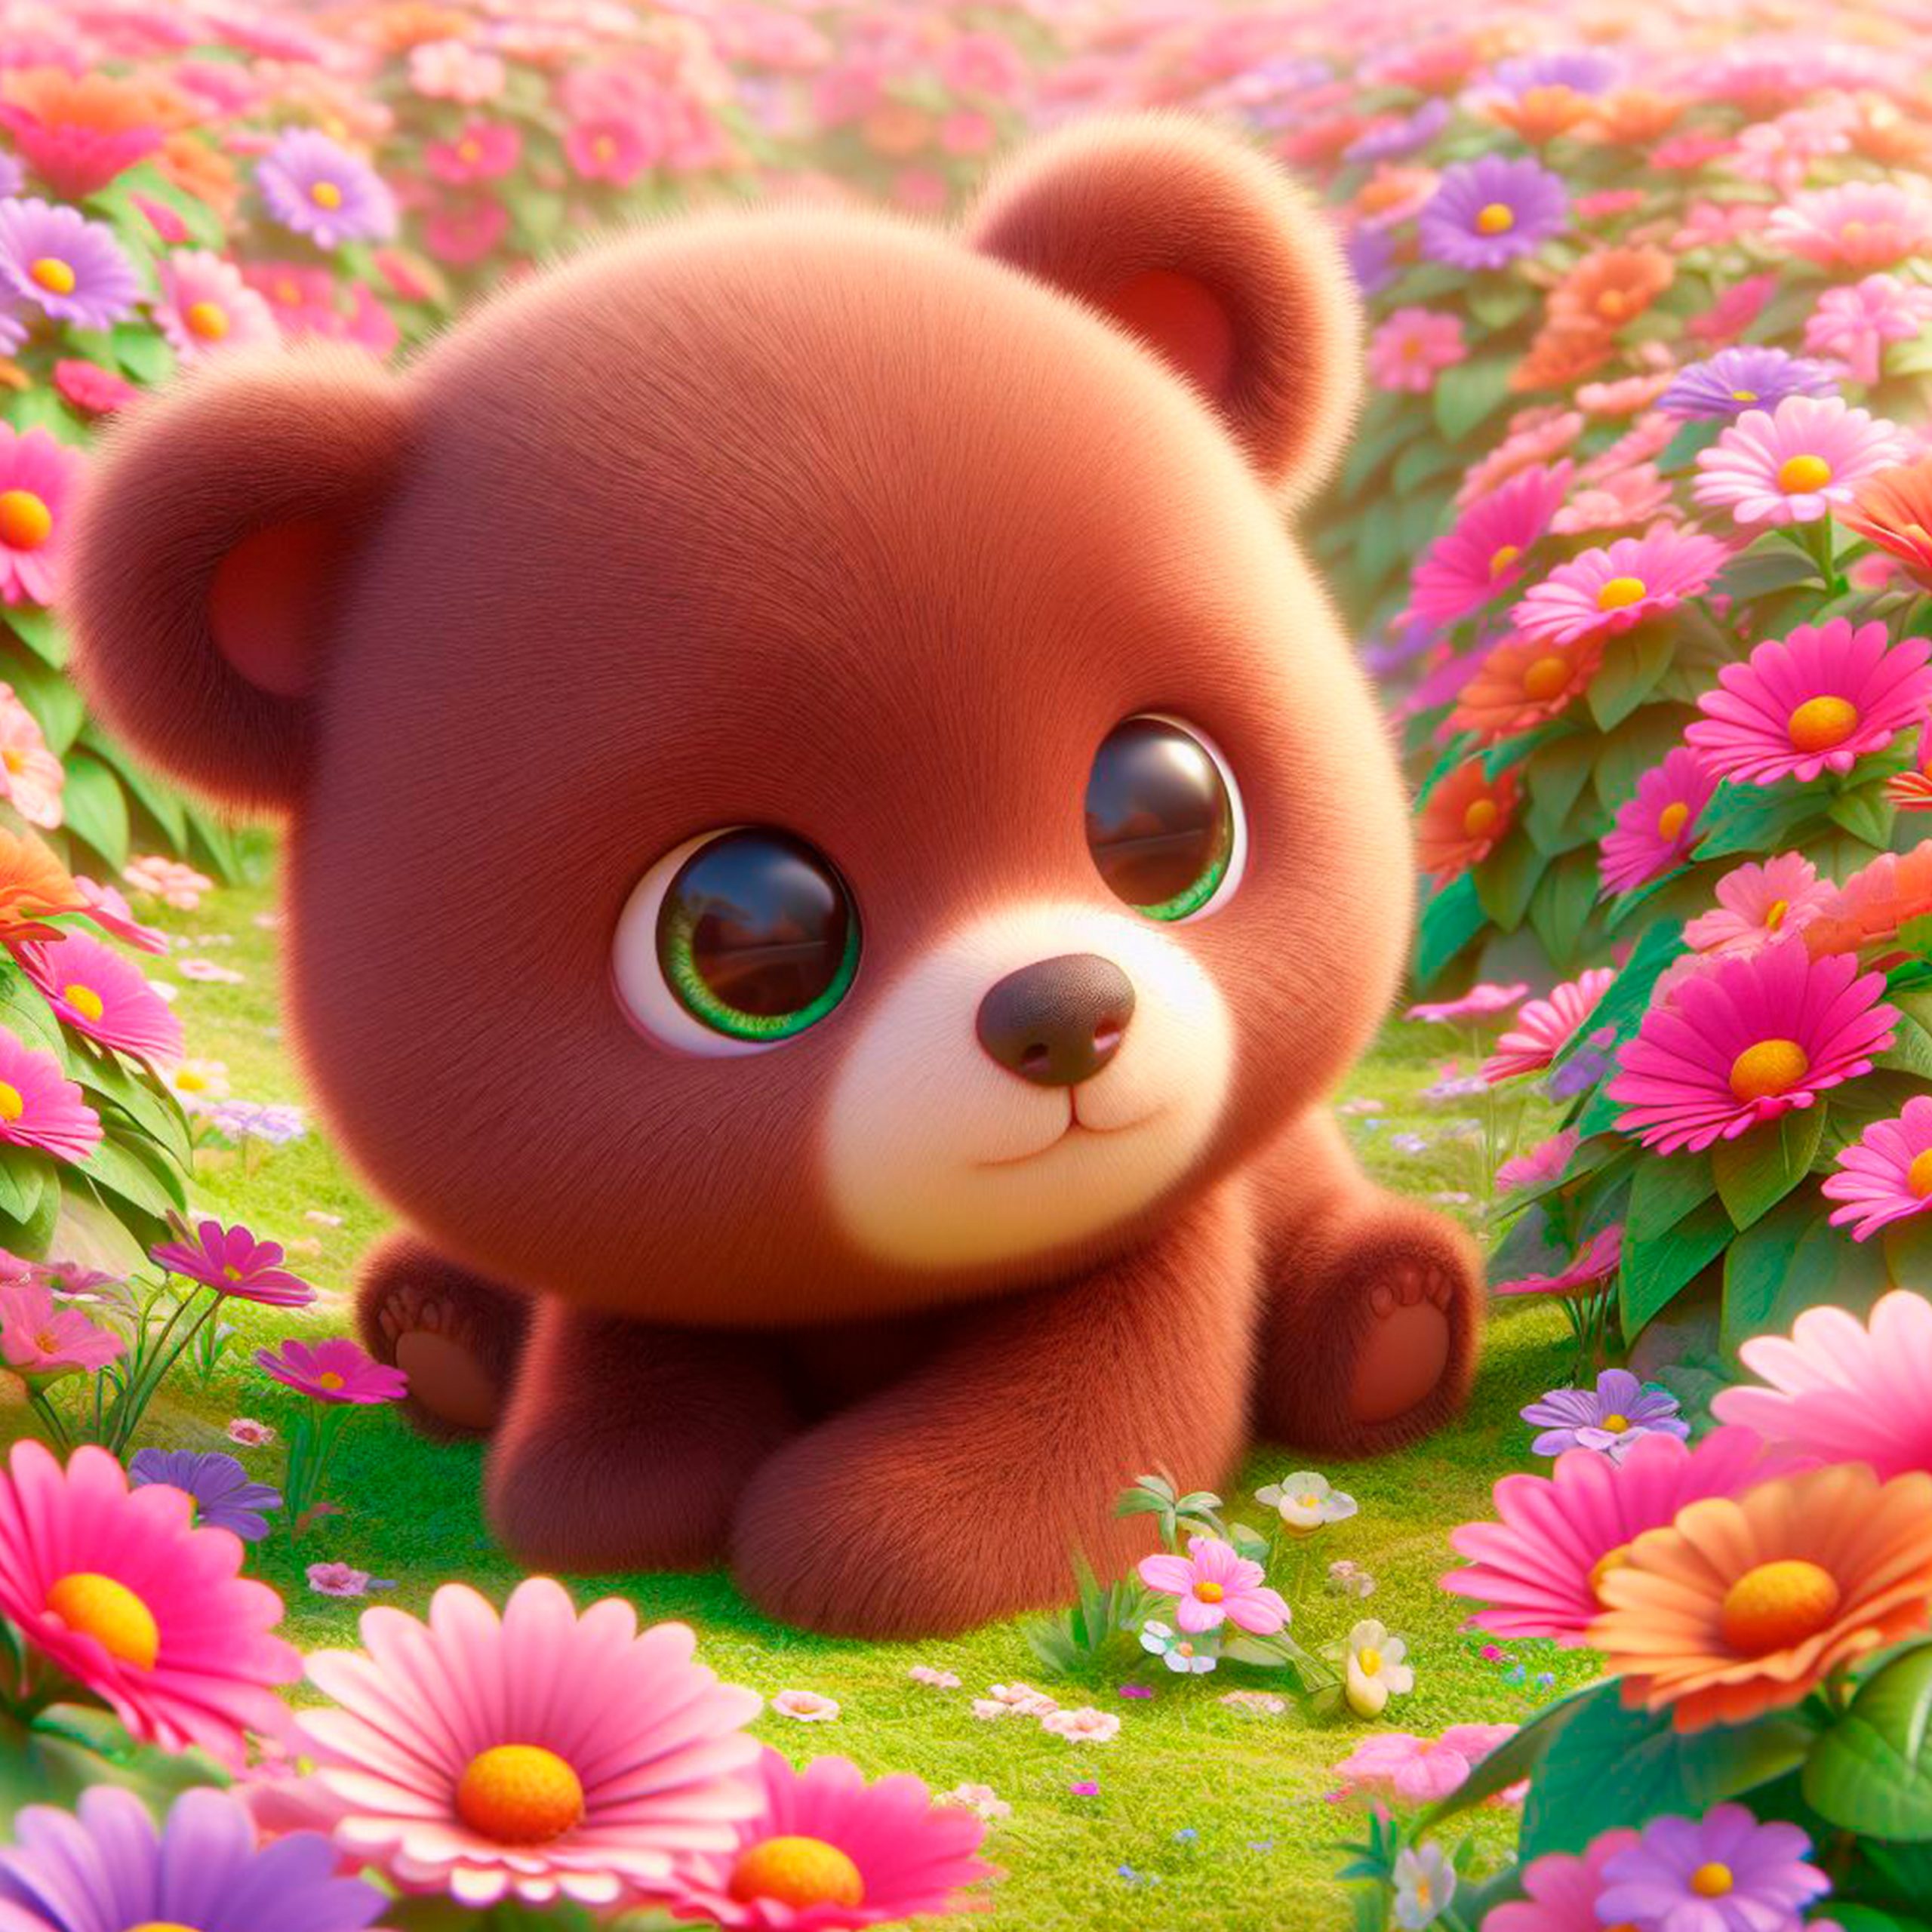 Pequeño oso bebé color café claro jugando en un campo de flores de muchos colores